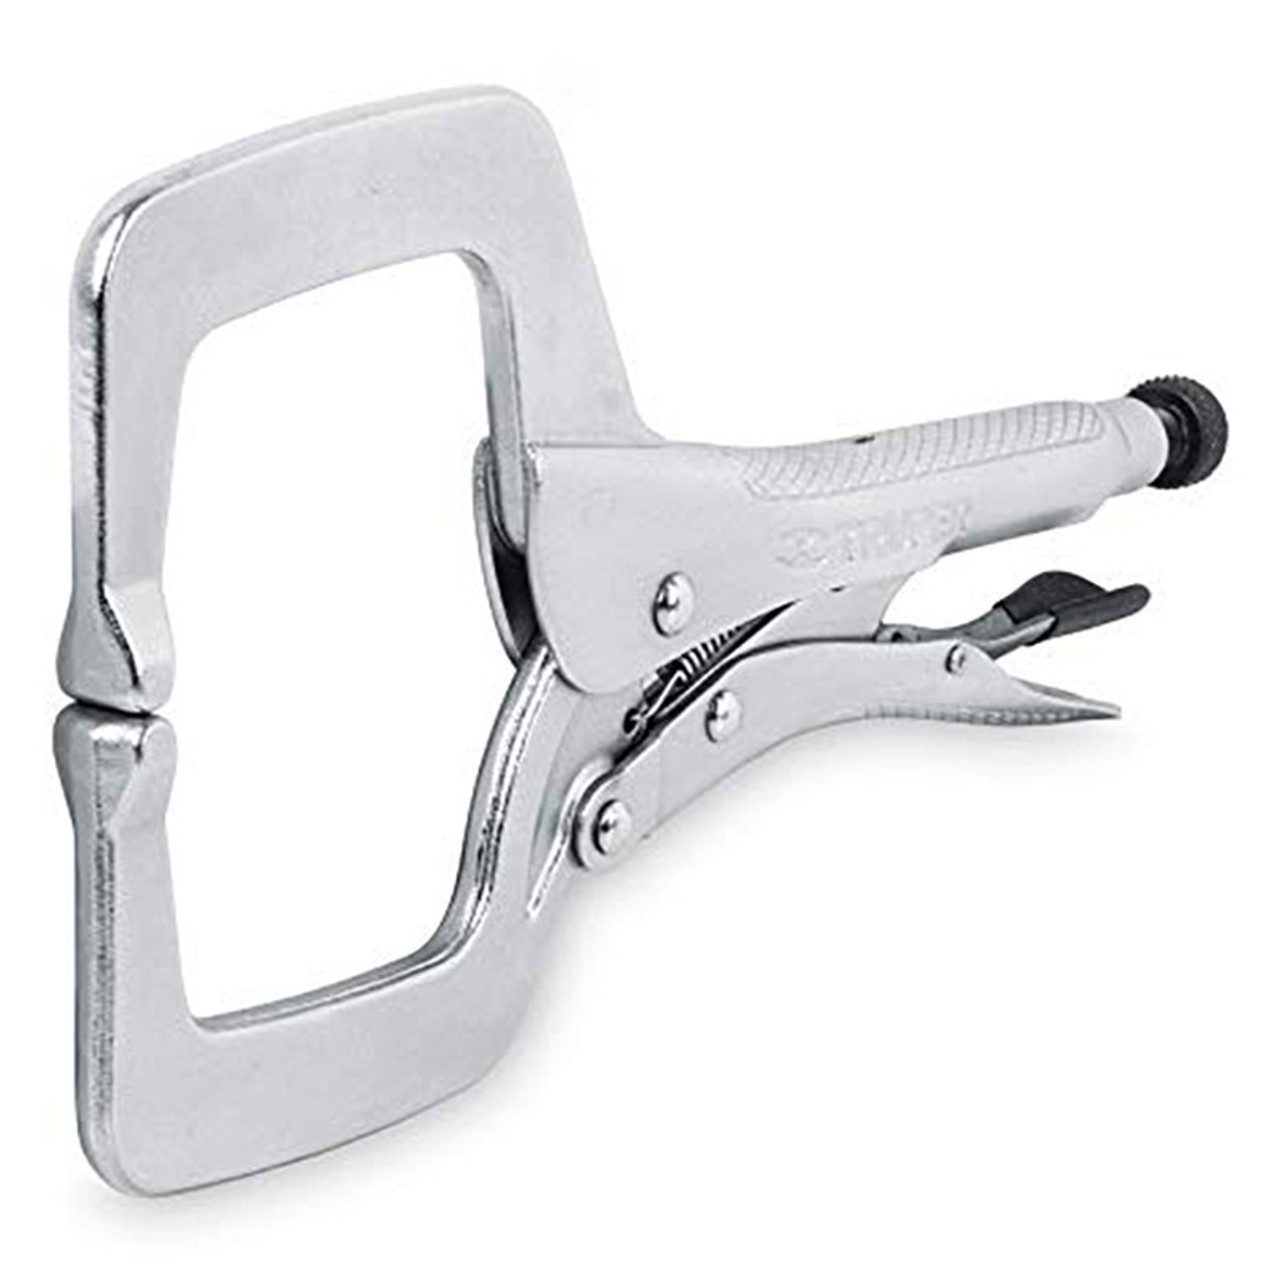 Truper 11" C-clamp Locking Pliers #17417